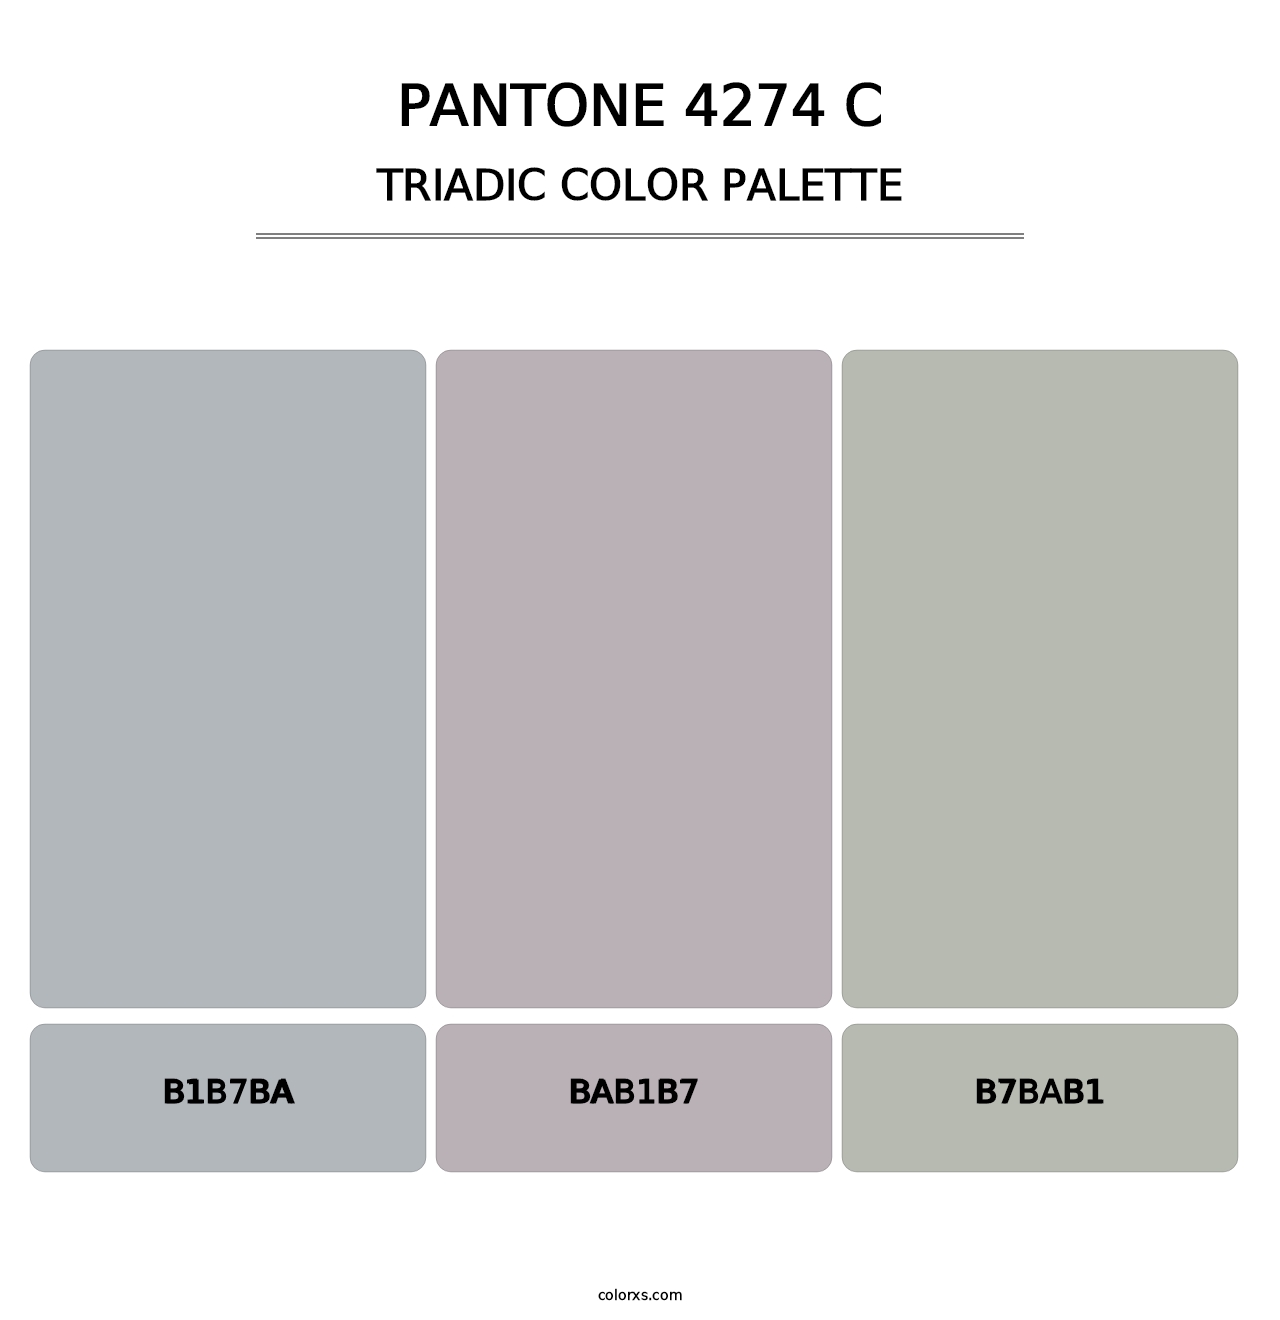 PANTONE 4274 C - Triadic Color Palette